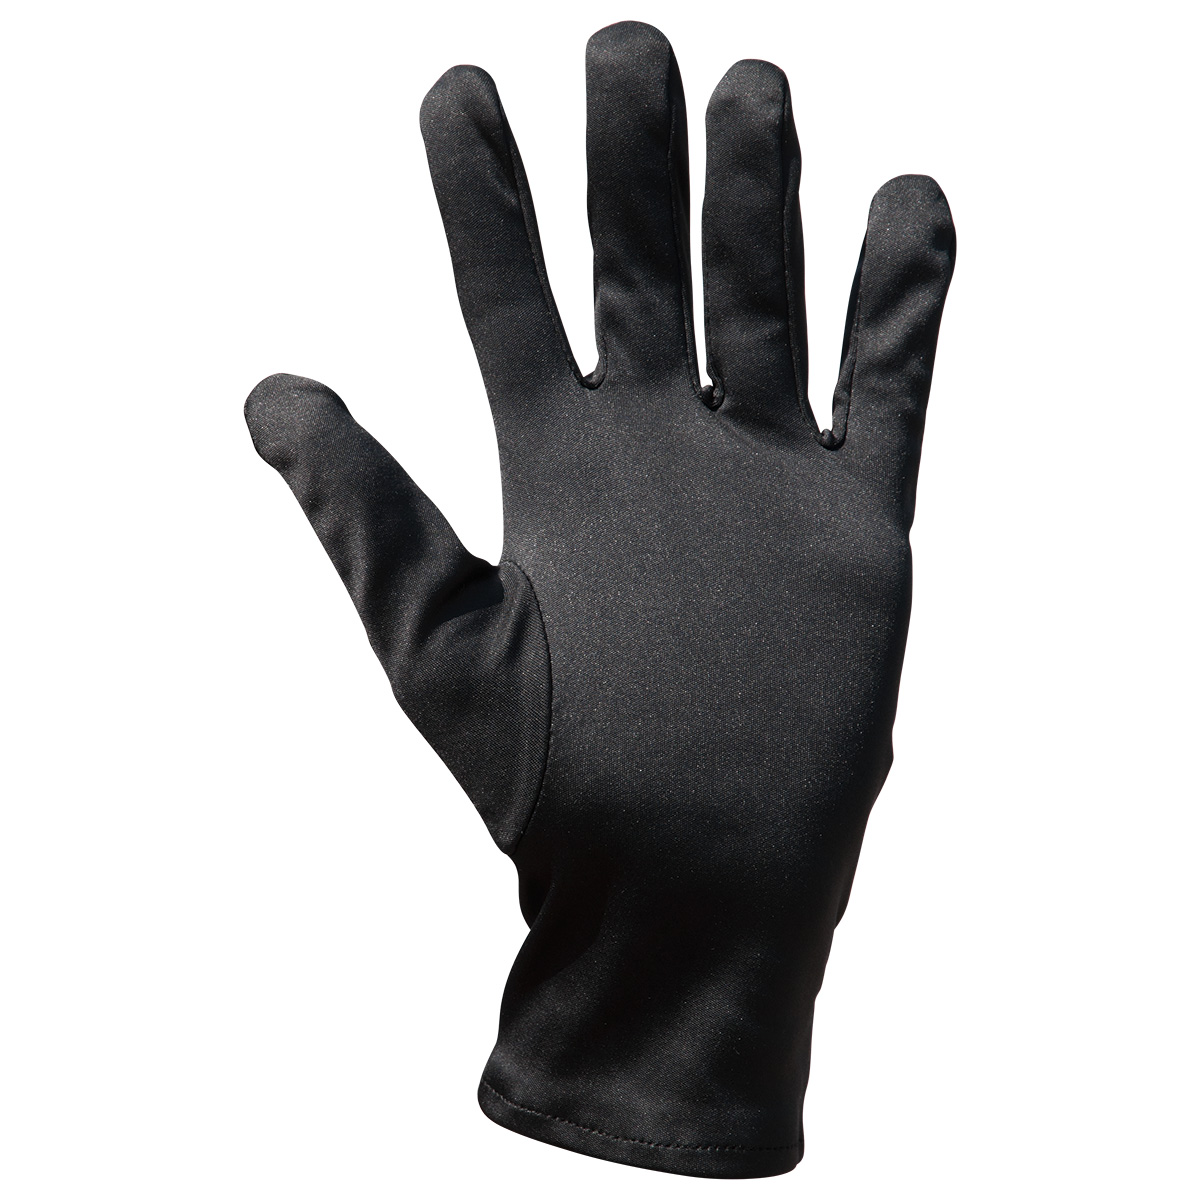 Mikrofaser Handschuh-Paar Haute Couture, schwarz, Größe L
